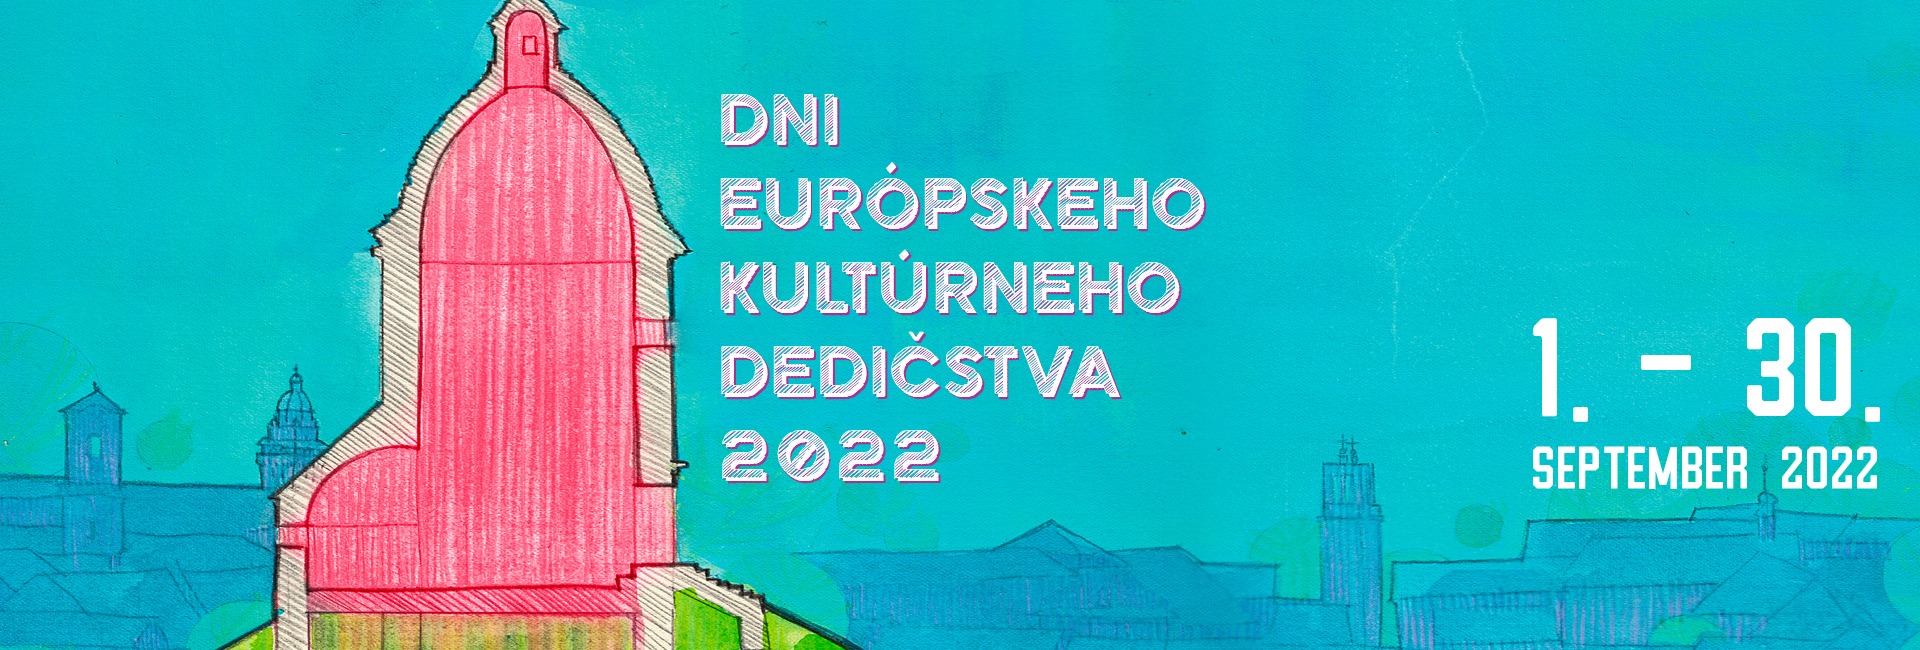 Dni európskeho kultúrneho dedičstva 2022